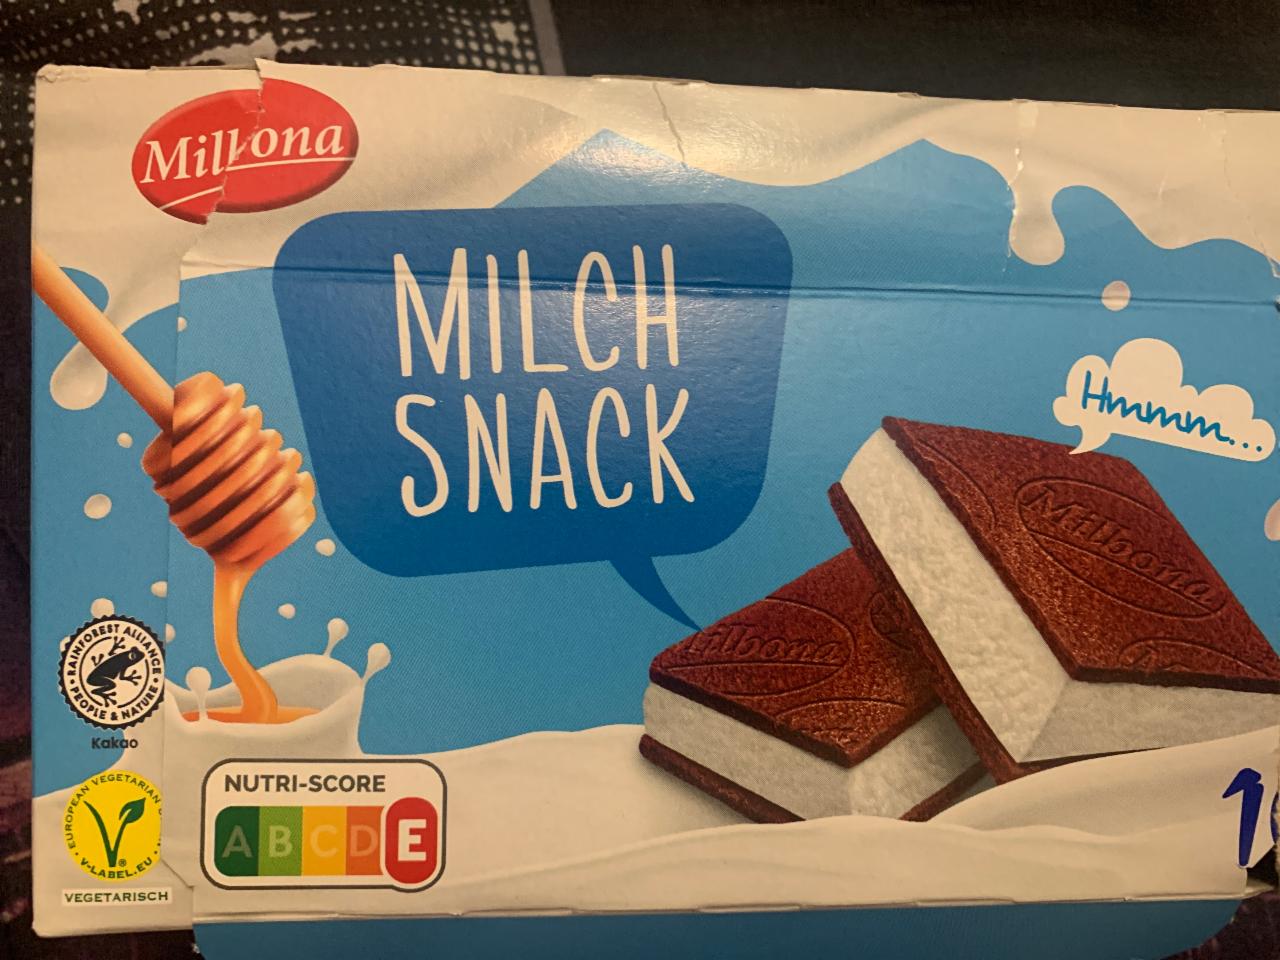 Фото - Milk snack Milbona